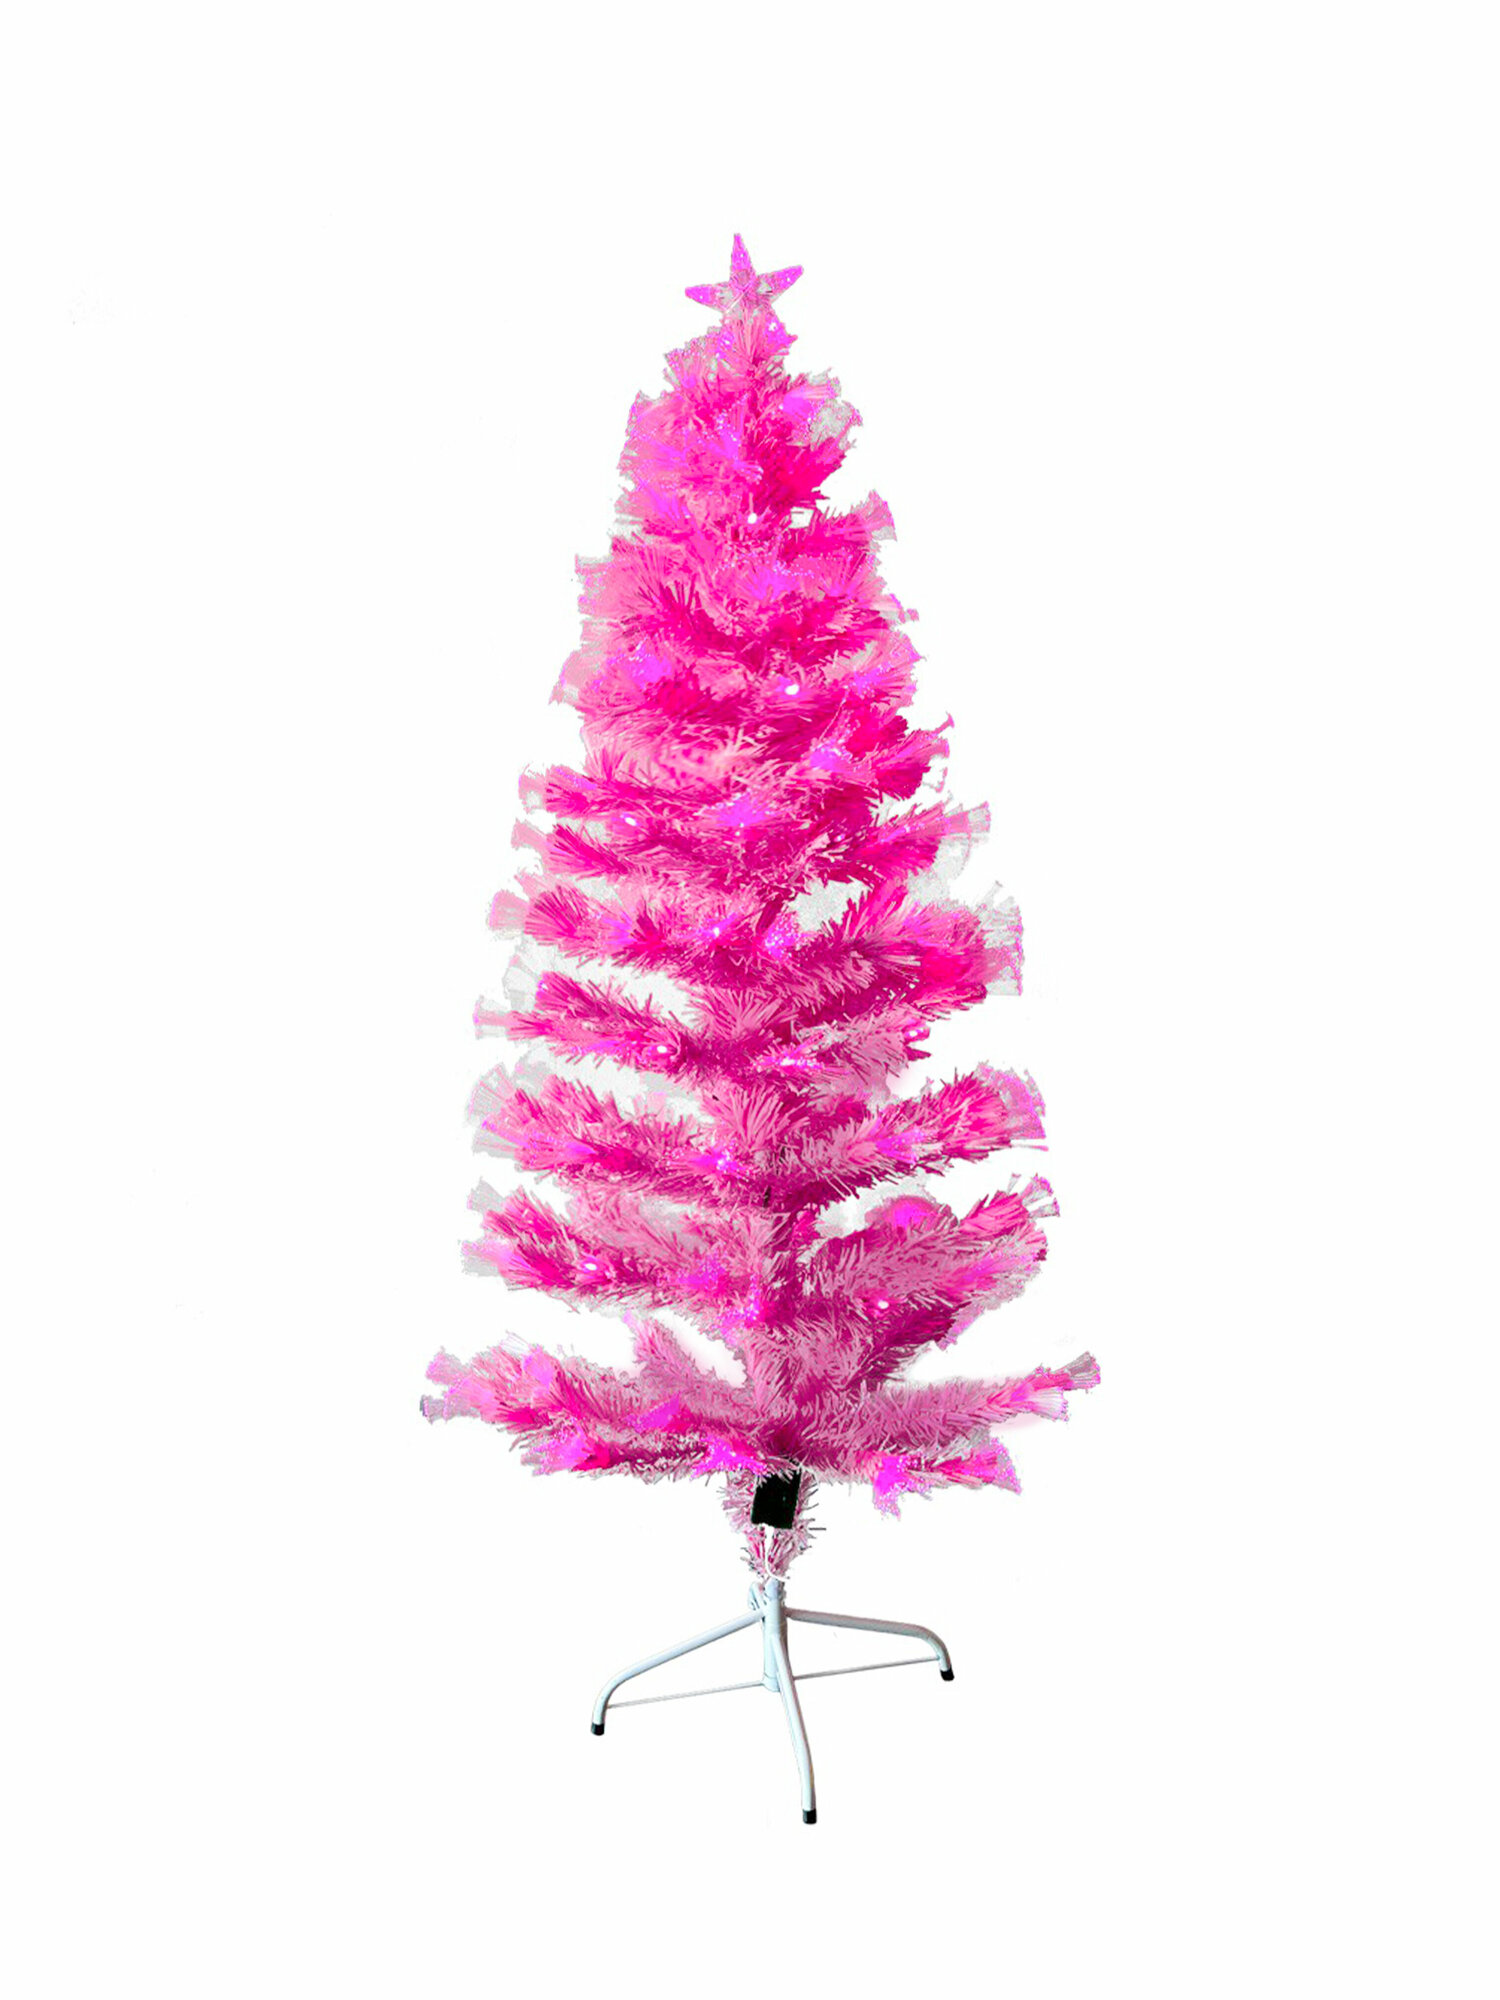 Новогодняя елка розовая, елка светодиодная, елка светящаяся, ель искусственная с подсветкой, встроенная гирлянда, 120 см